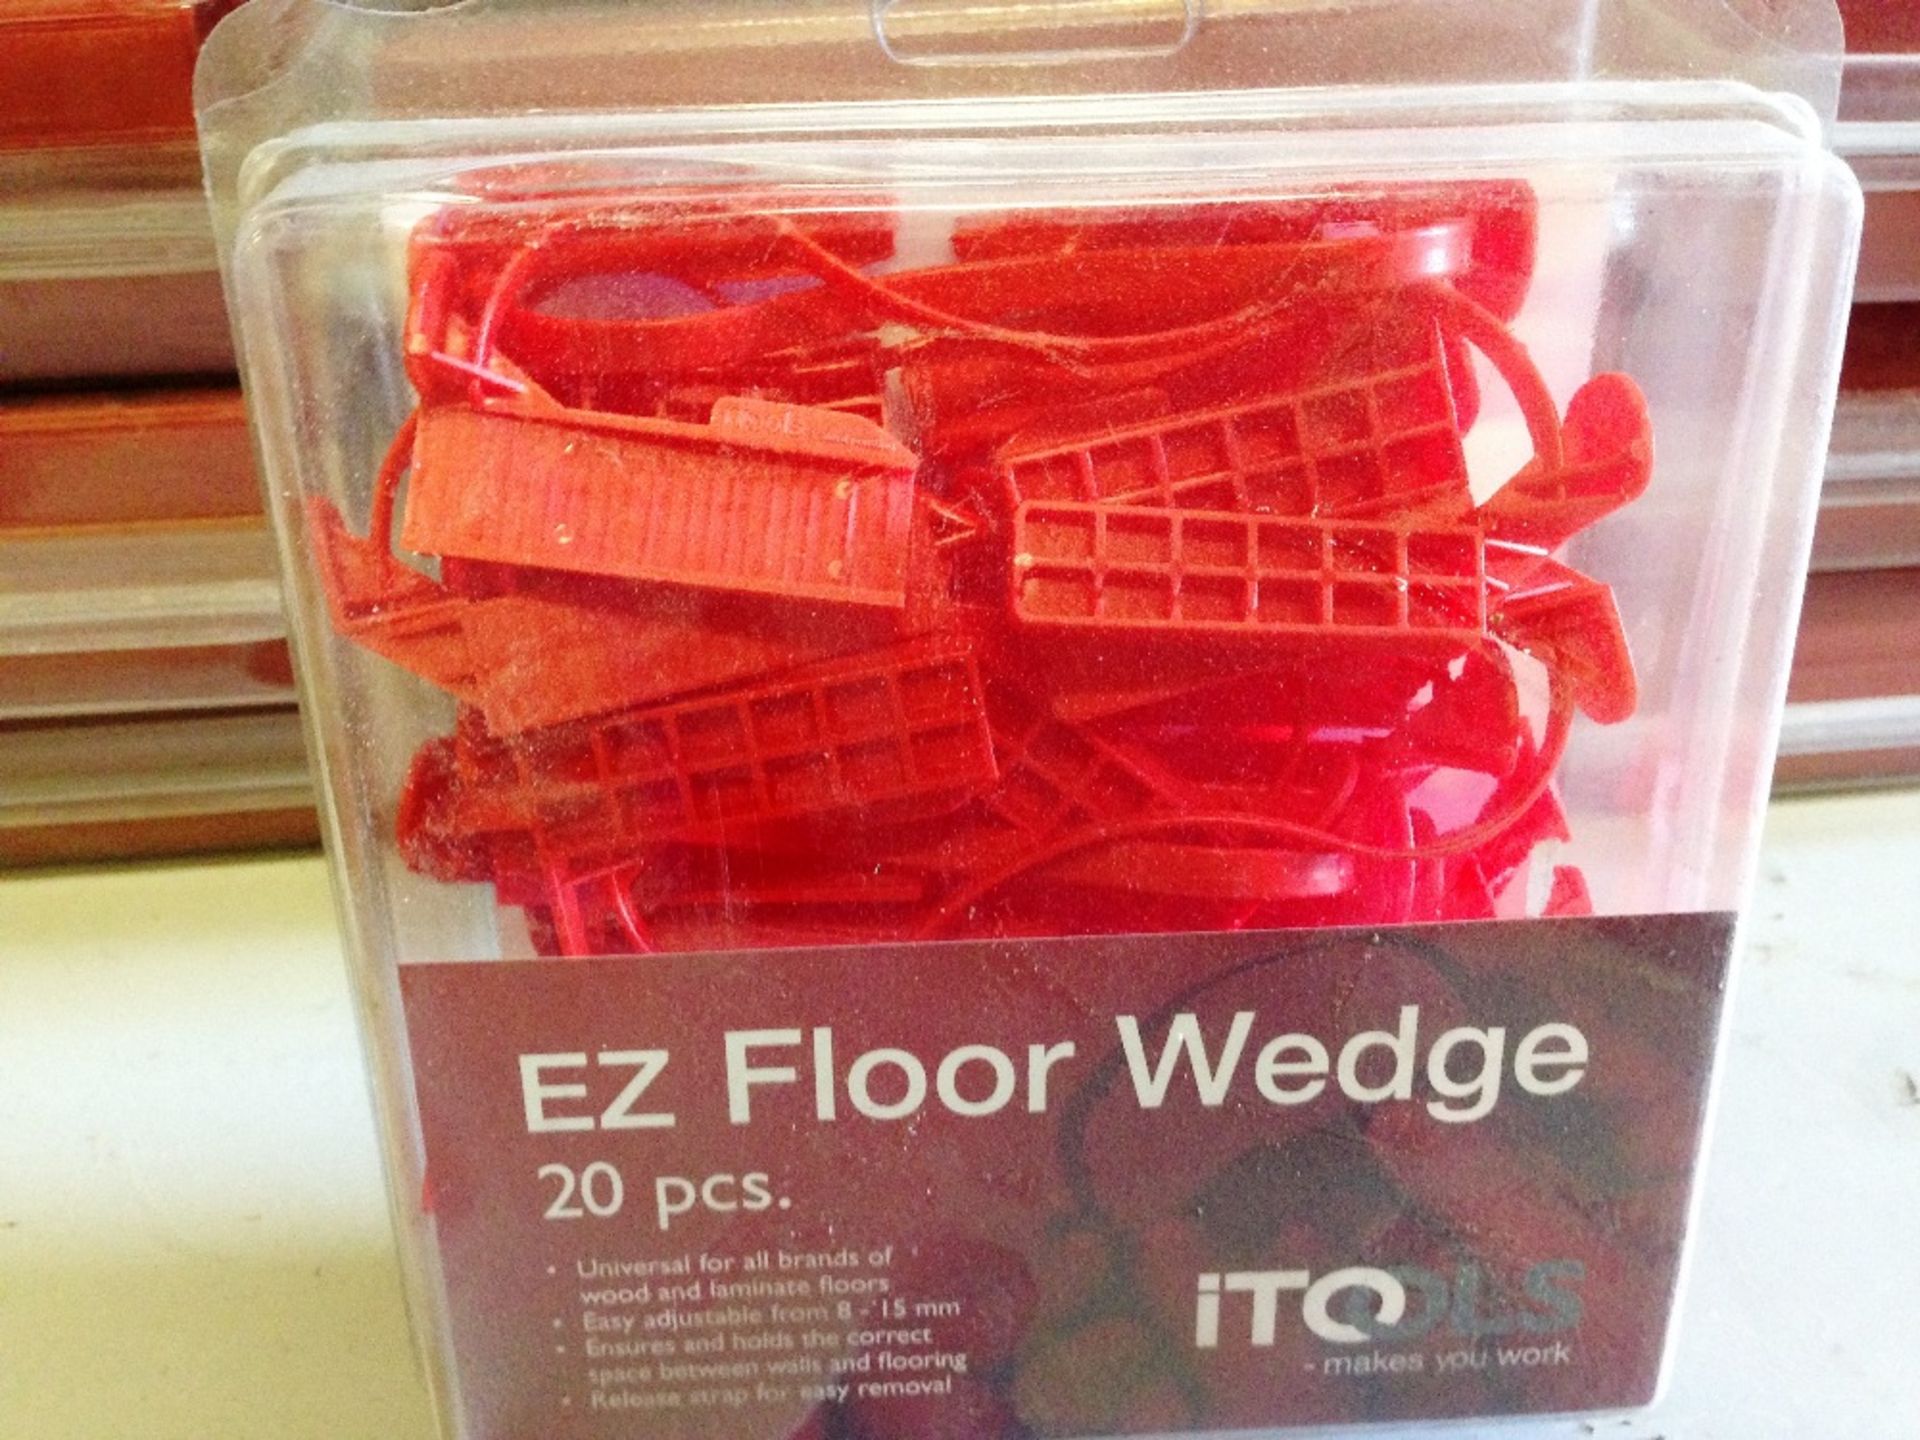 11 x packs of 20 Itools EZ Floor wedges - Image 2 of 3